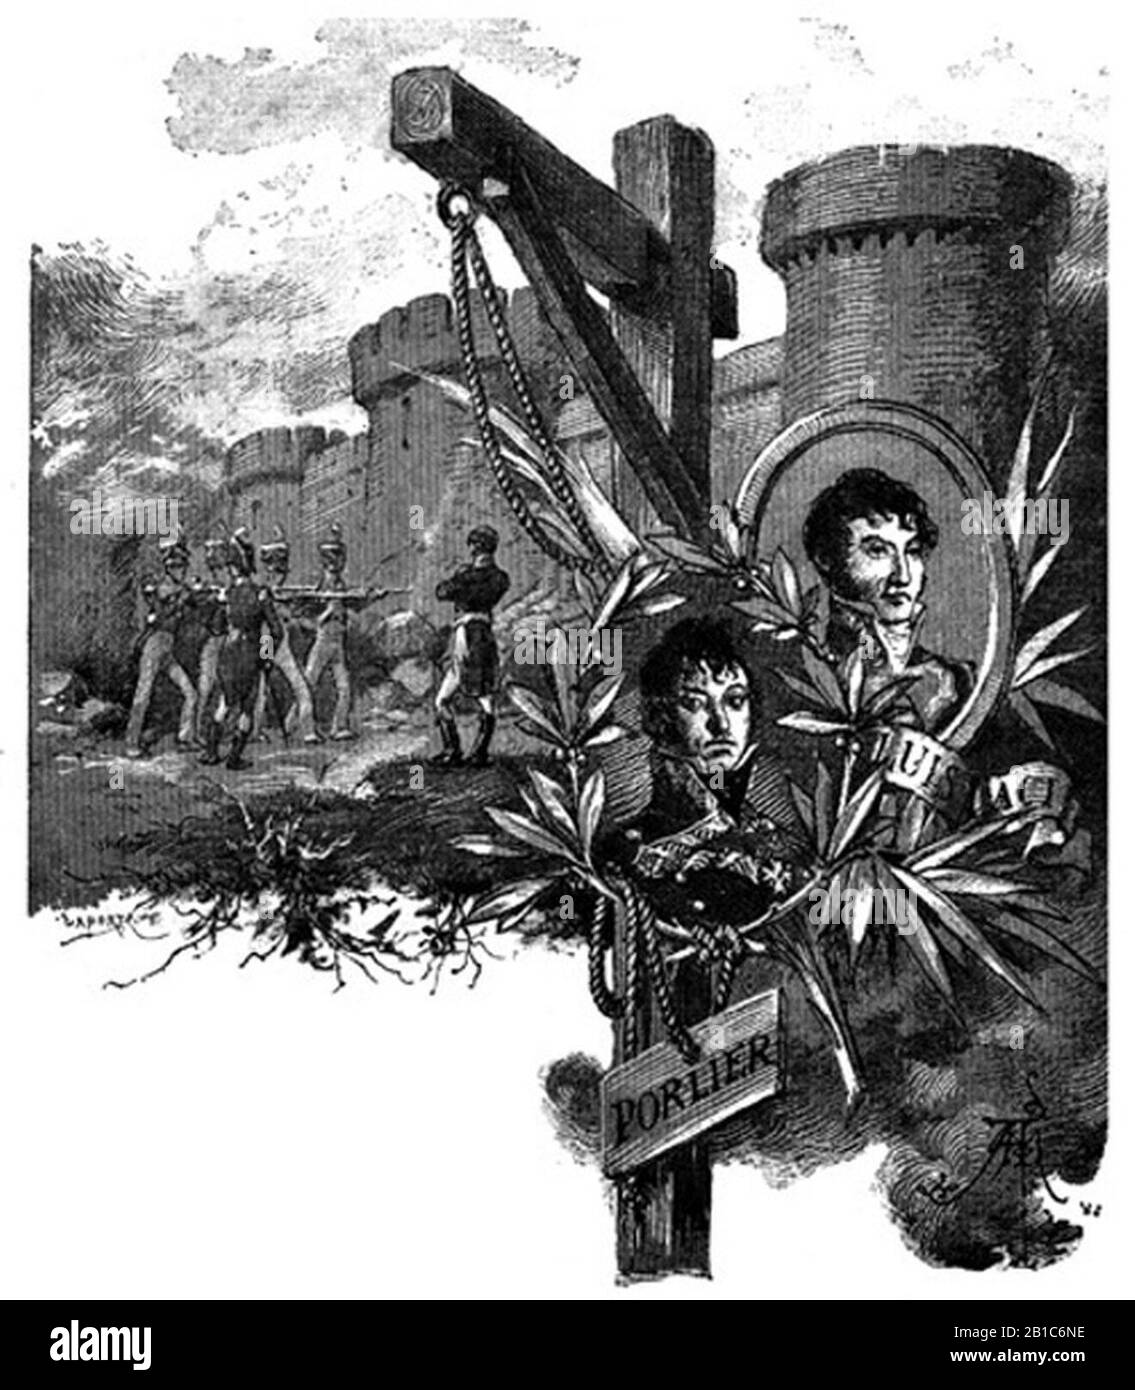 Fusilamiento del General Lacy. Medallones de Lacy y Porlier. Ilustración de 'La segunda casaca' de Galdós. Stockfoto